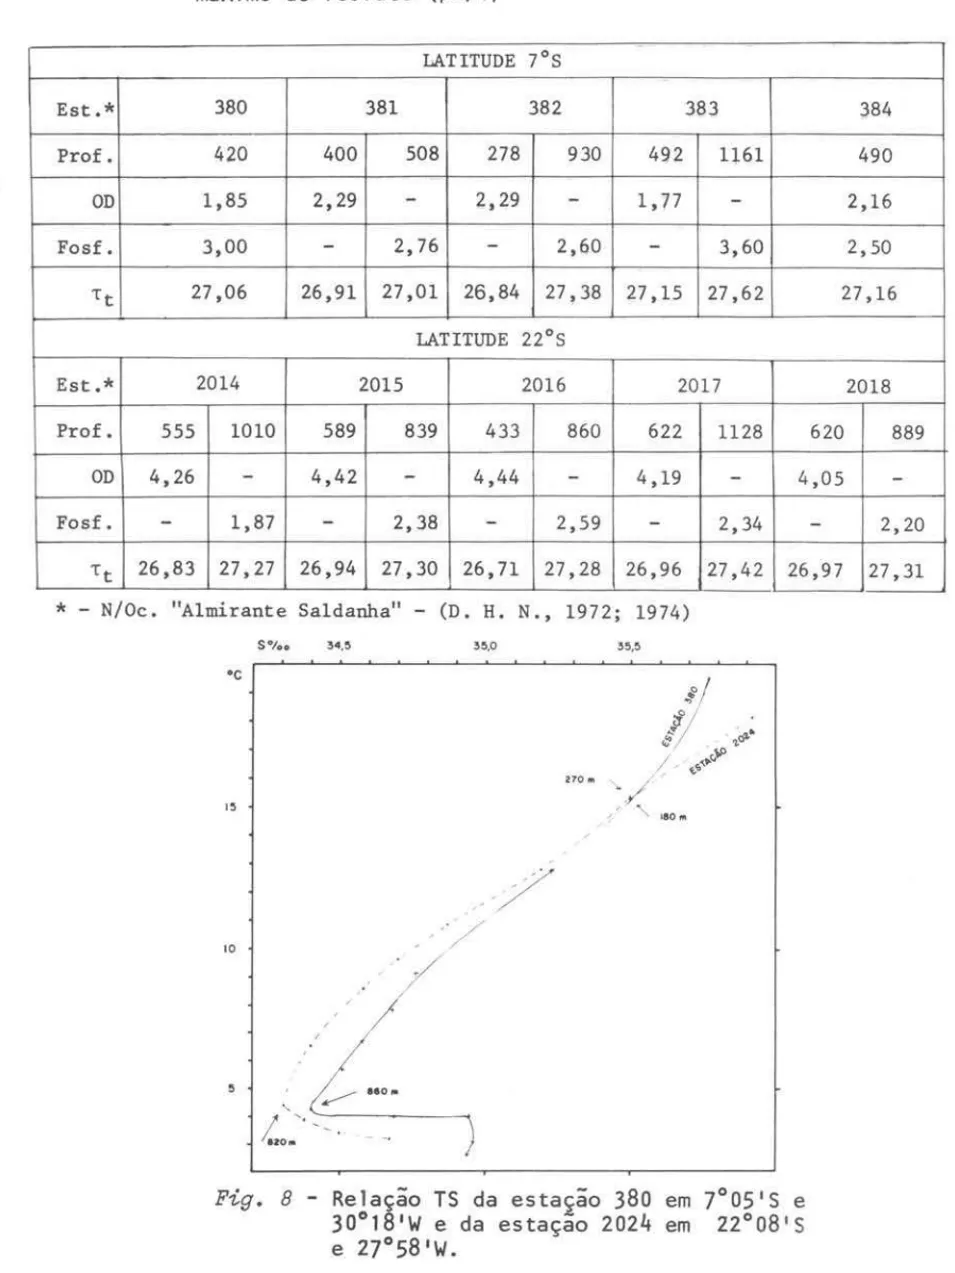 Tabela  II  I  - Profundidade  (m)  do  mínimo  de  oxigênio  di5so1vido  (ml/l)  e  máximo  de  fosfato  ＨｾｍＯｬＩ＠ LATITUDE  7 0 S  Est.*  380  381  382  383  384  Praf